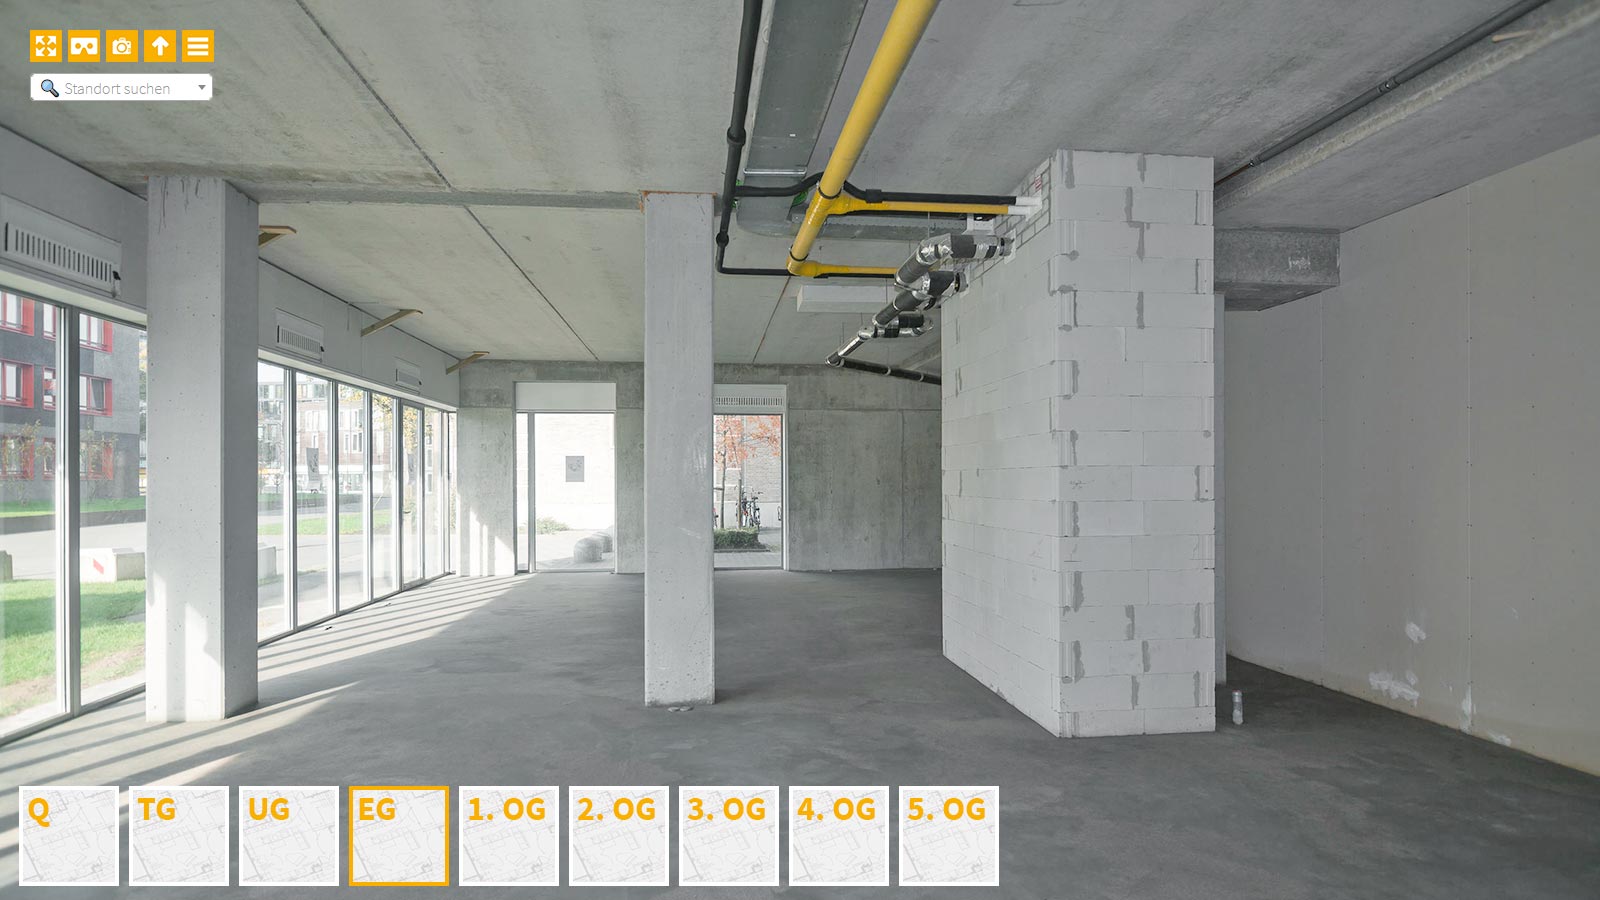 Baudokumentation 360 Grad bei gestörten Projekten in 


	


	


	


	


	


	


	


	


	


	Chemnitz









, Bilddokumentation als virtueller Rundgang